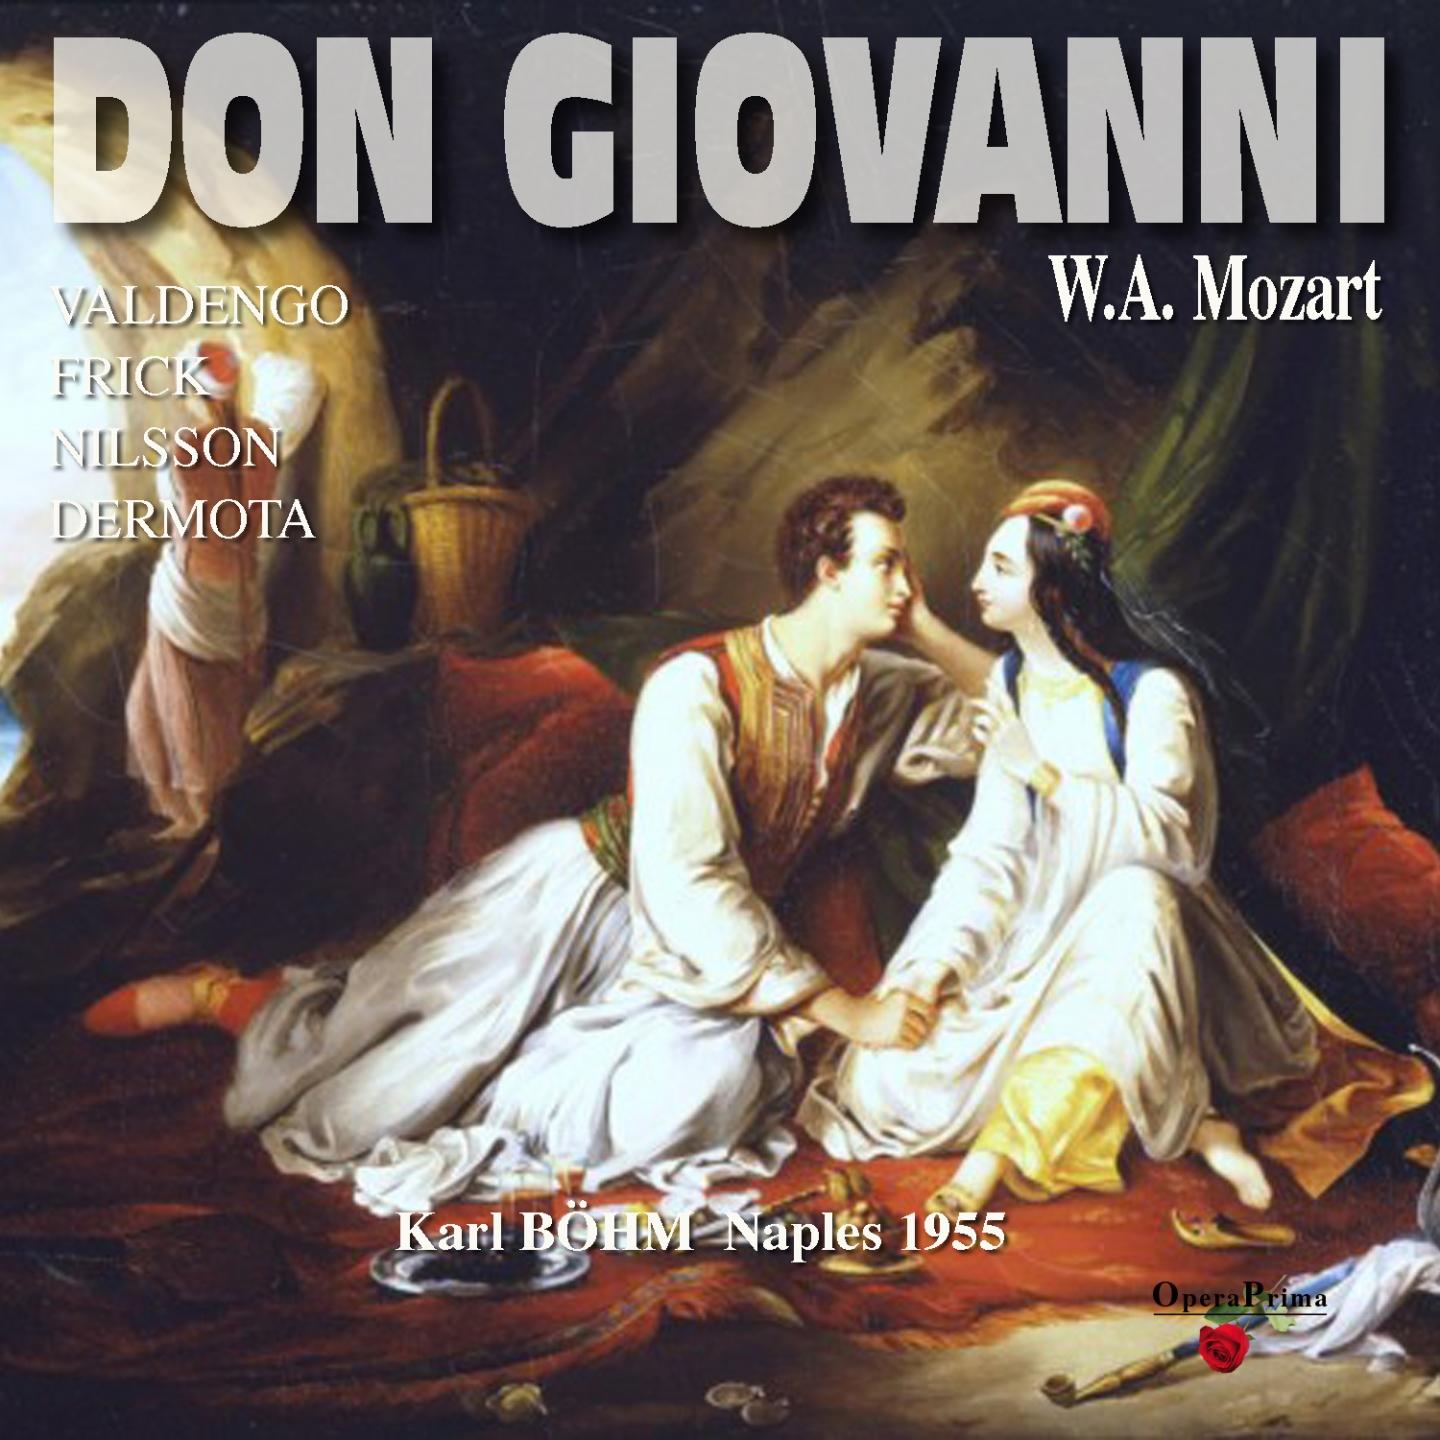 Don Giovanni: Act I - "Fuggi, crudele fuggi"